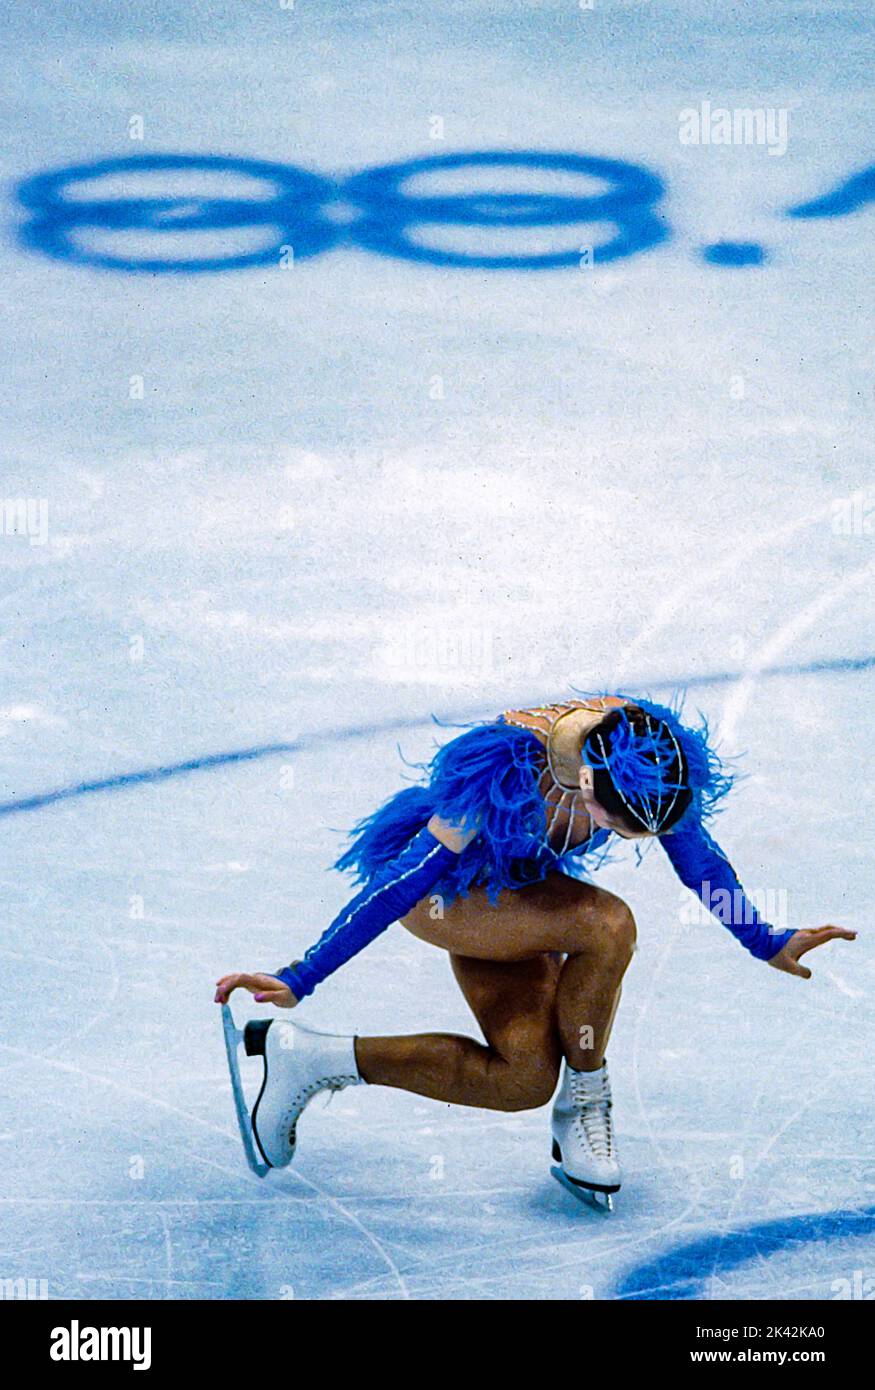 Katarina Witt (DDR) Goldmedaillengewinnerin und Olympiasiegerin im Kurzprogramm des Damen-Eiskunstlauf bei den Olympischen Winterspielen 1988. Stockfoto